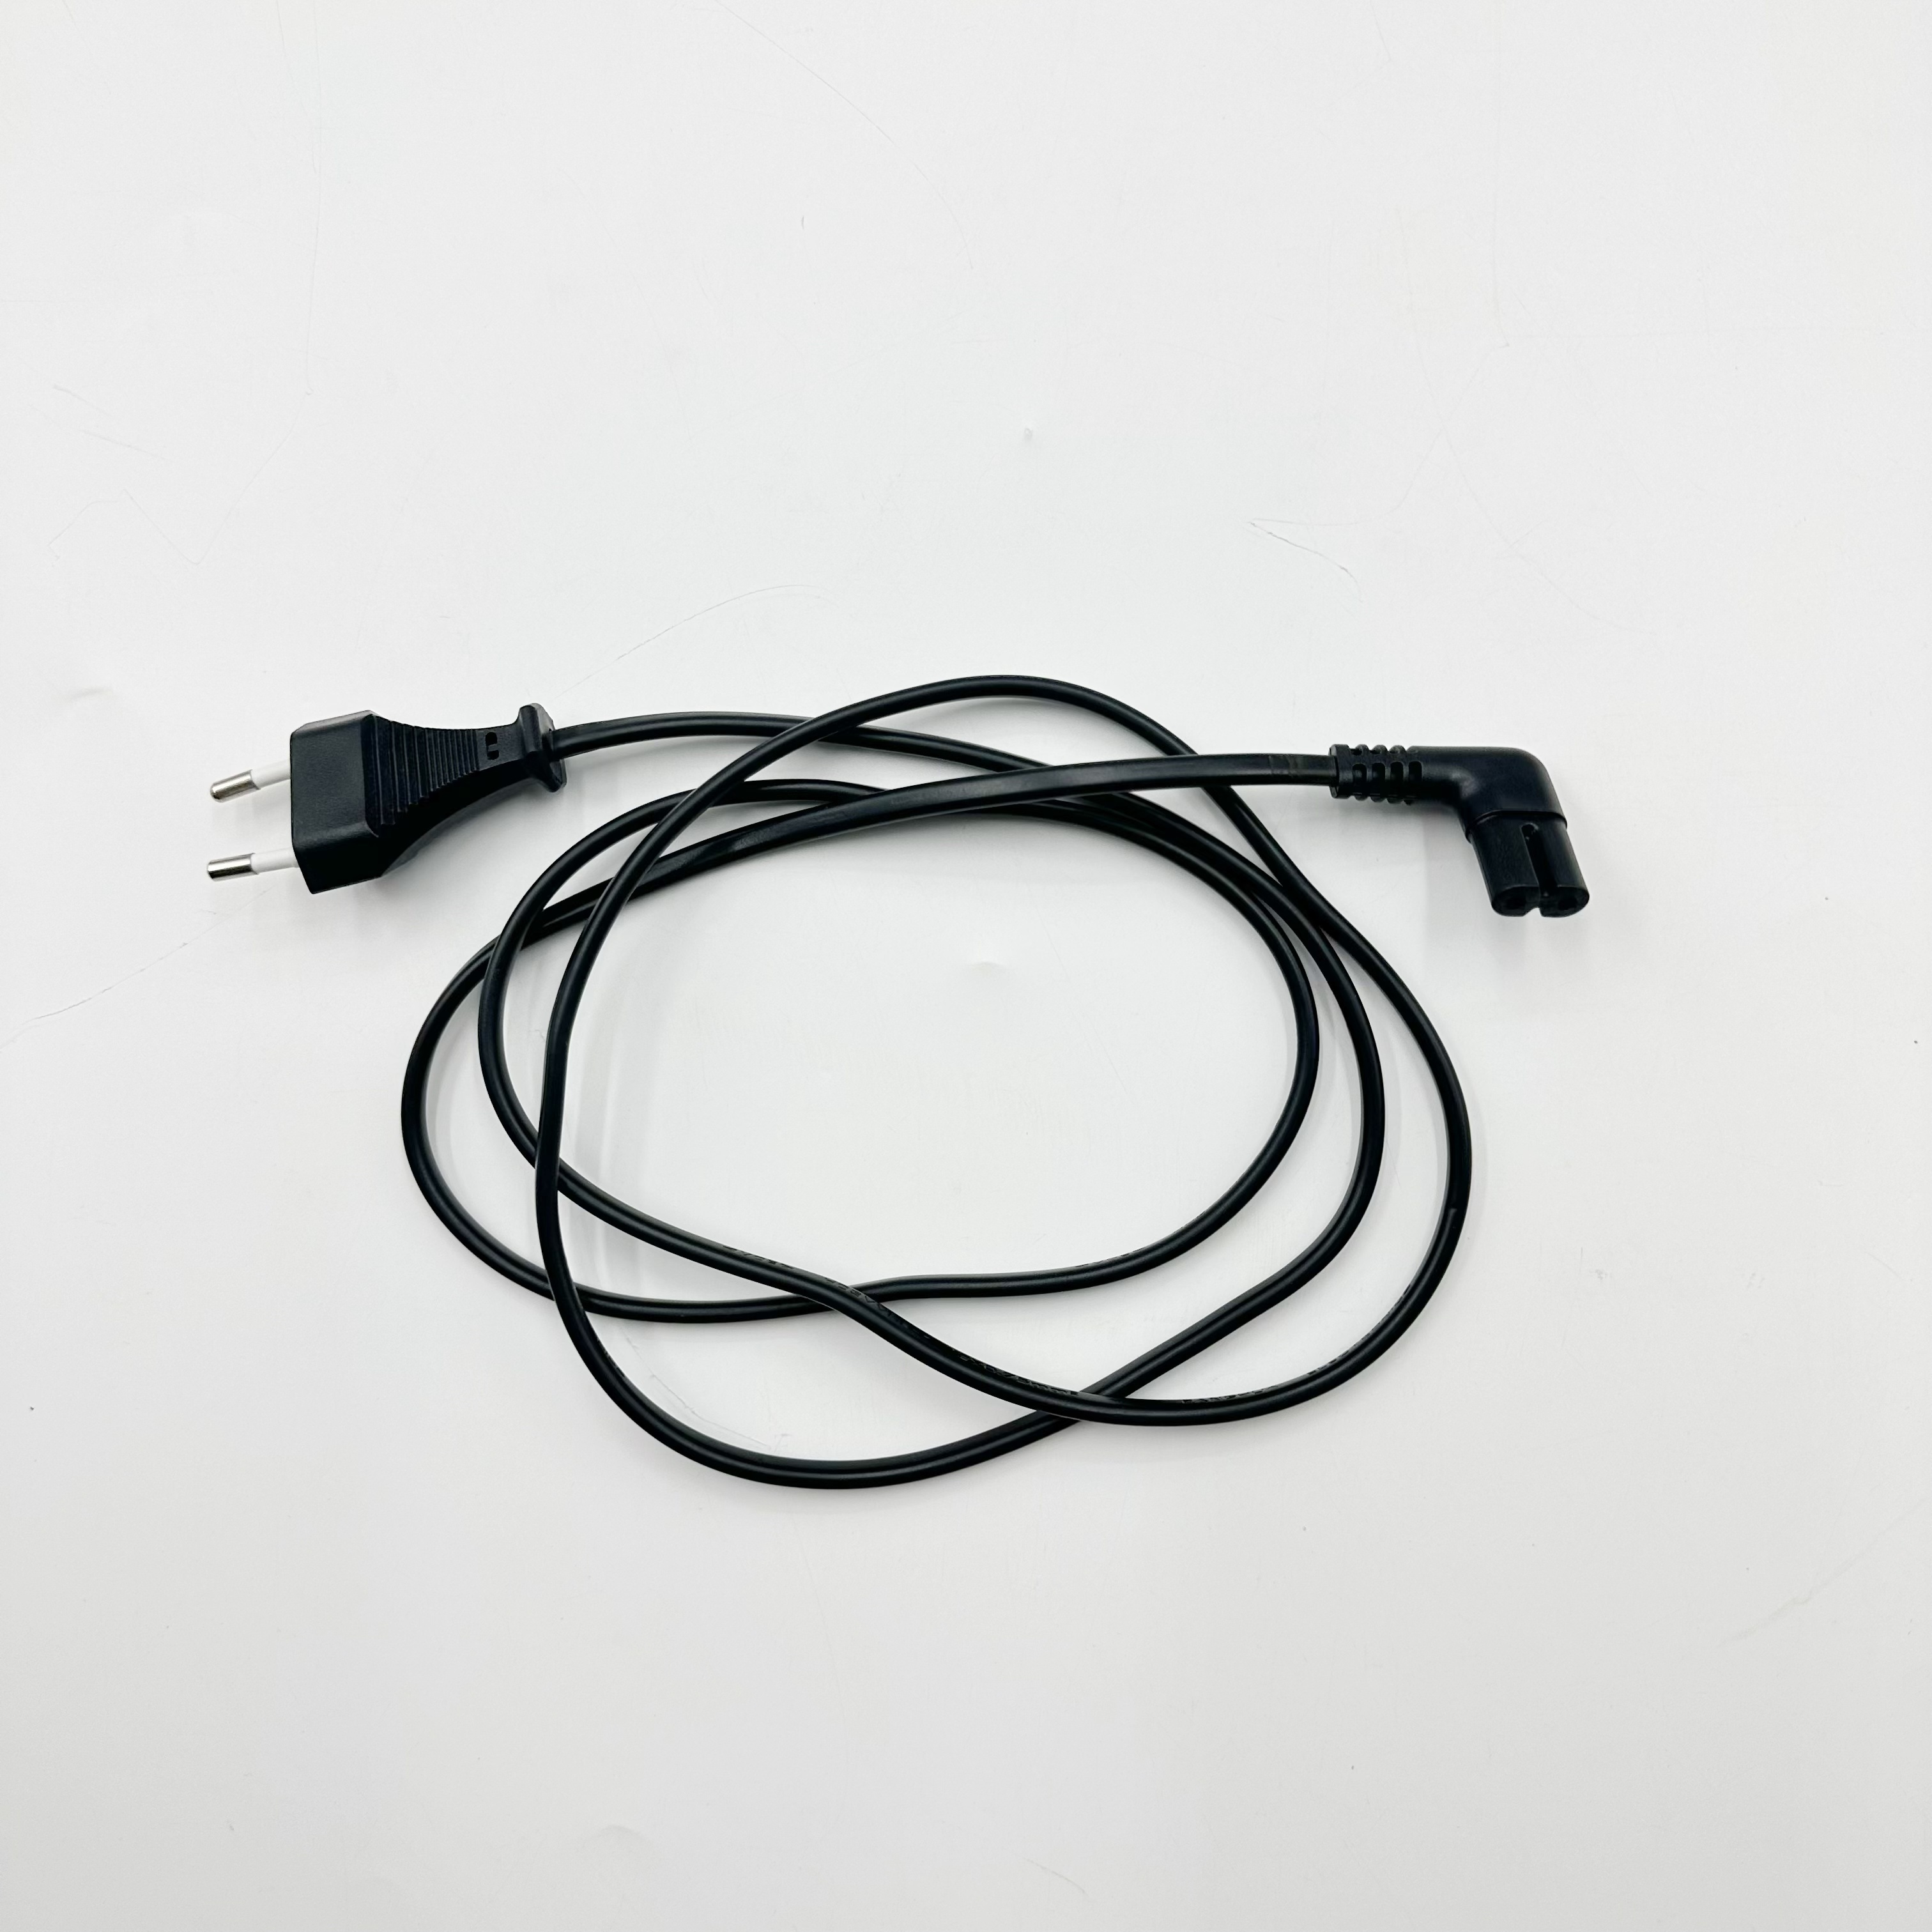 Cable Alimentation PC 1,8m - Noir